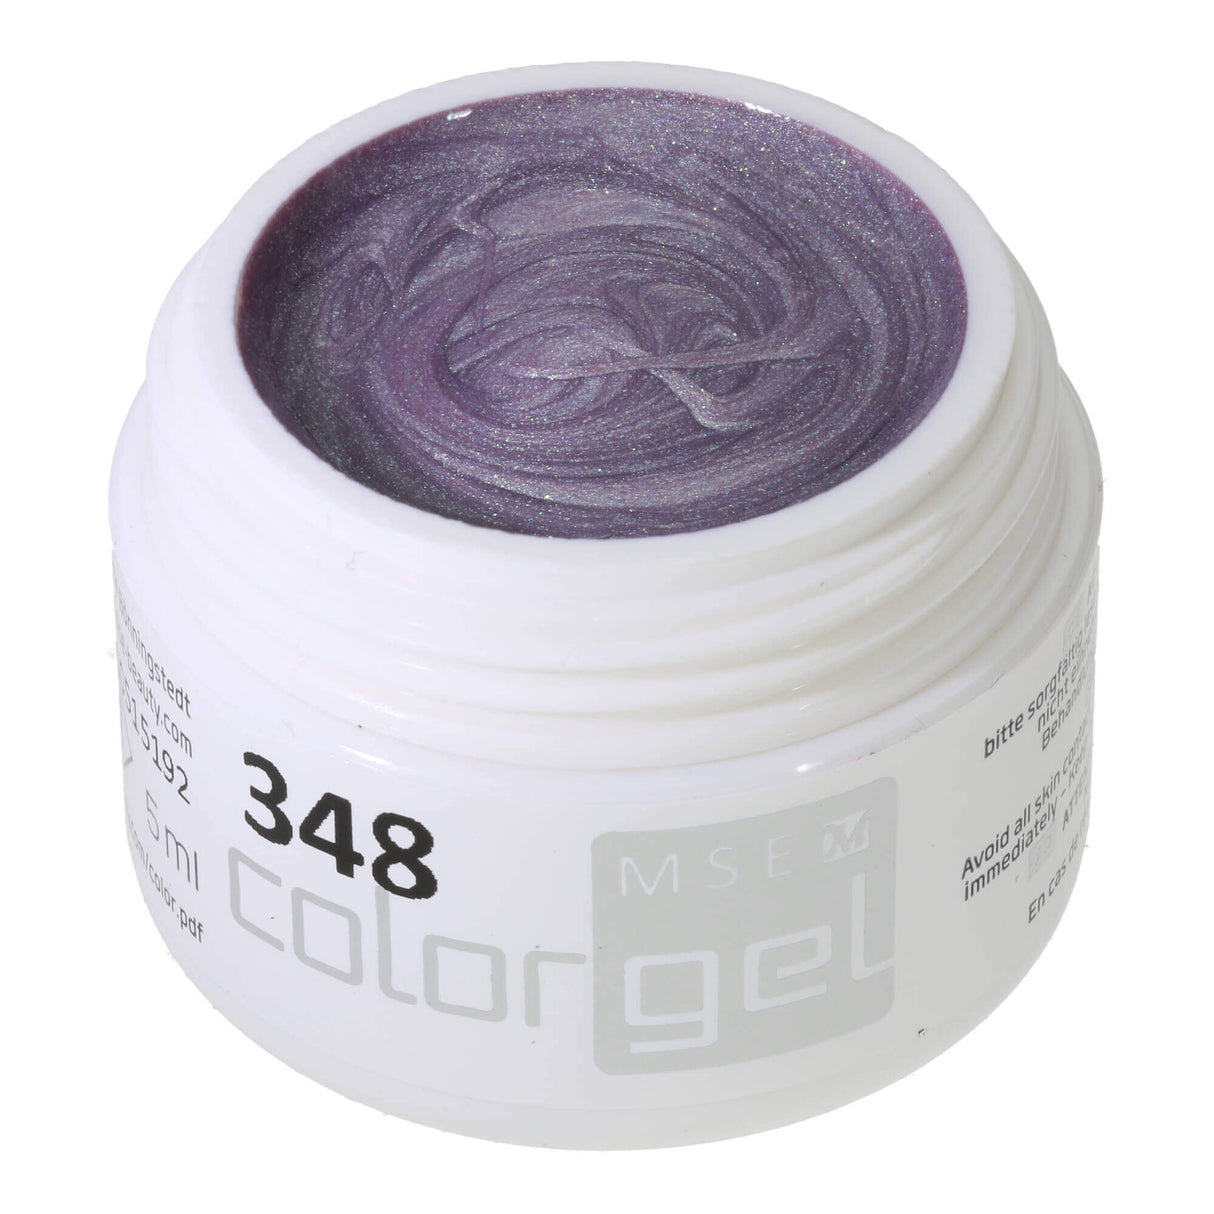 Màu # 348 Premium EFFECT Gel màu bạc 5ml với ánh sáng lấp lánh màu hồng xanh